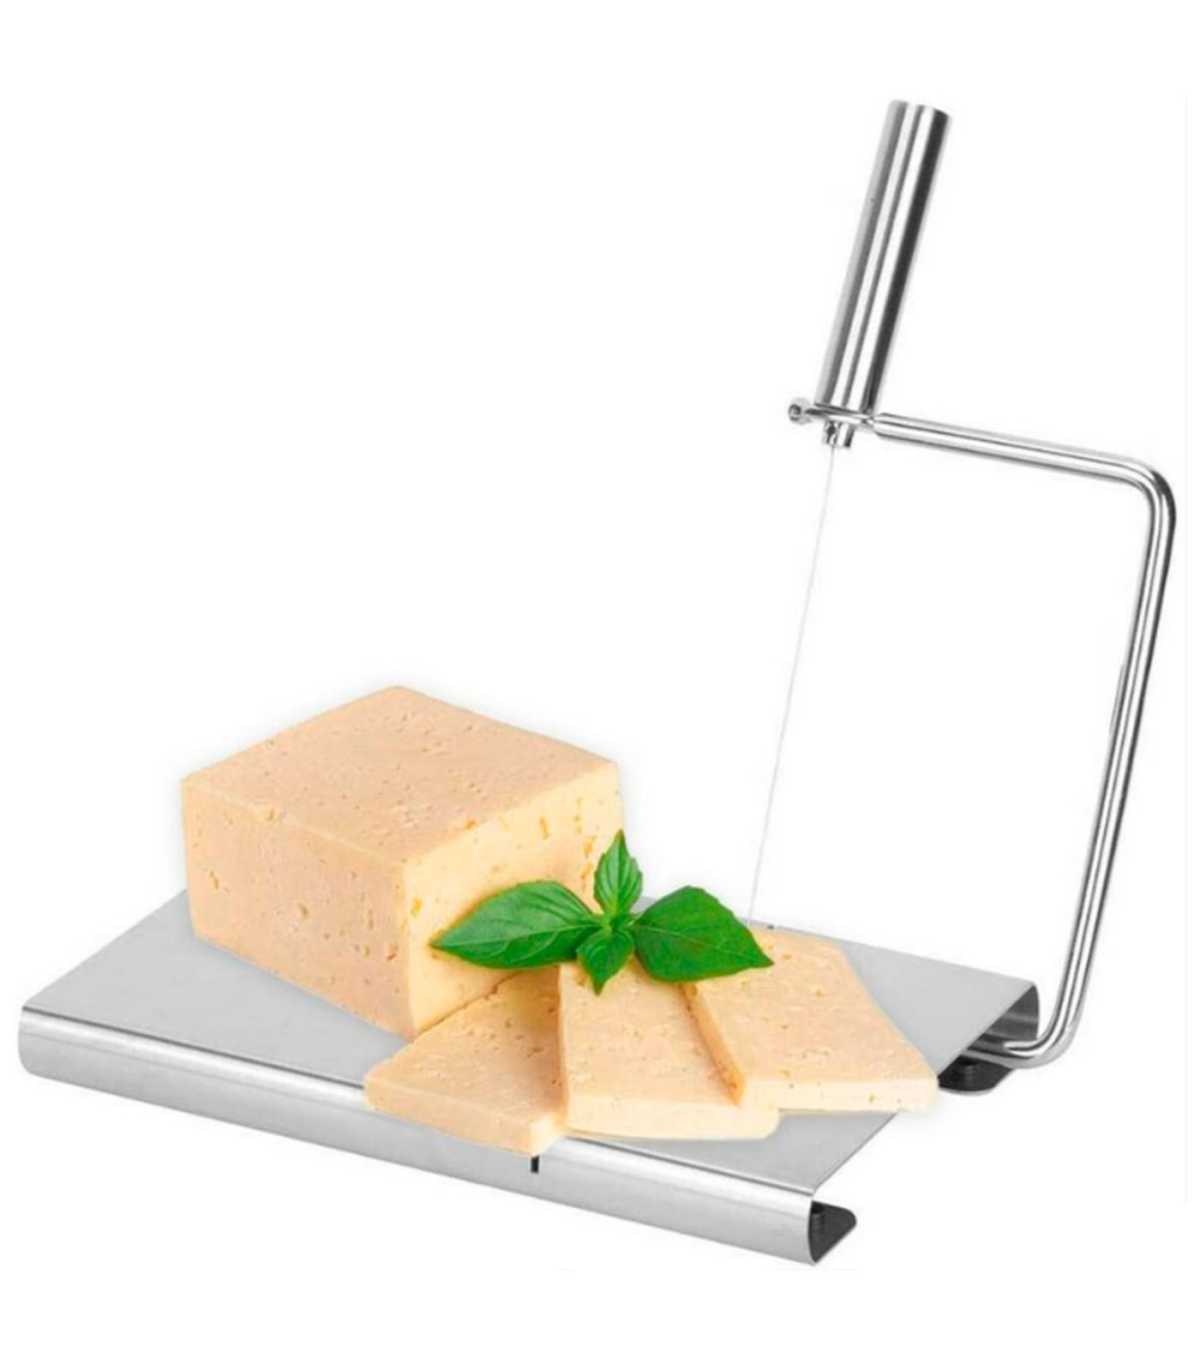 Tradineur - Cortador de queso manual, guillotina de acero